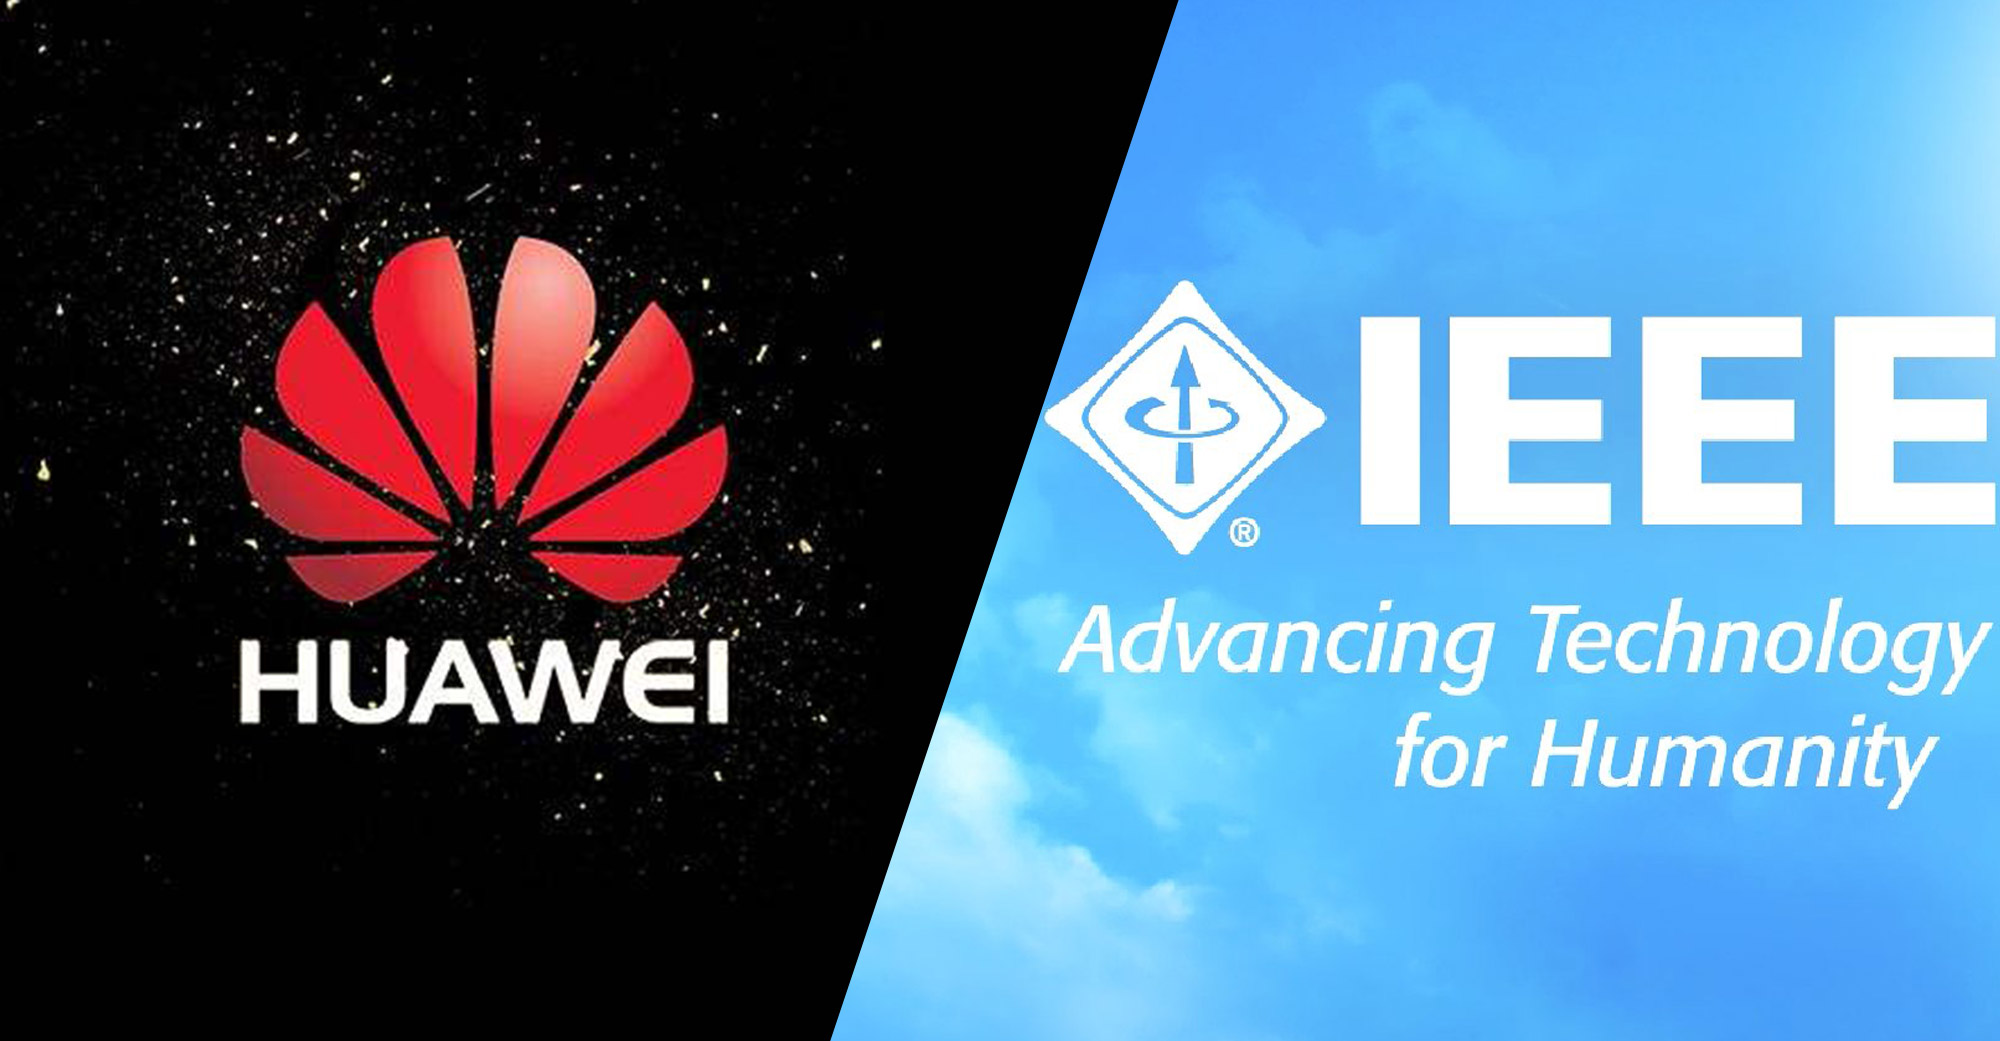 Bilimsel makale yayıncısı IEEE, Huawei’nin dökümanlara erişimini yasakladı